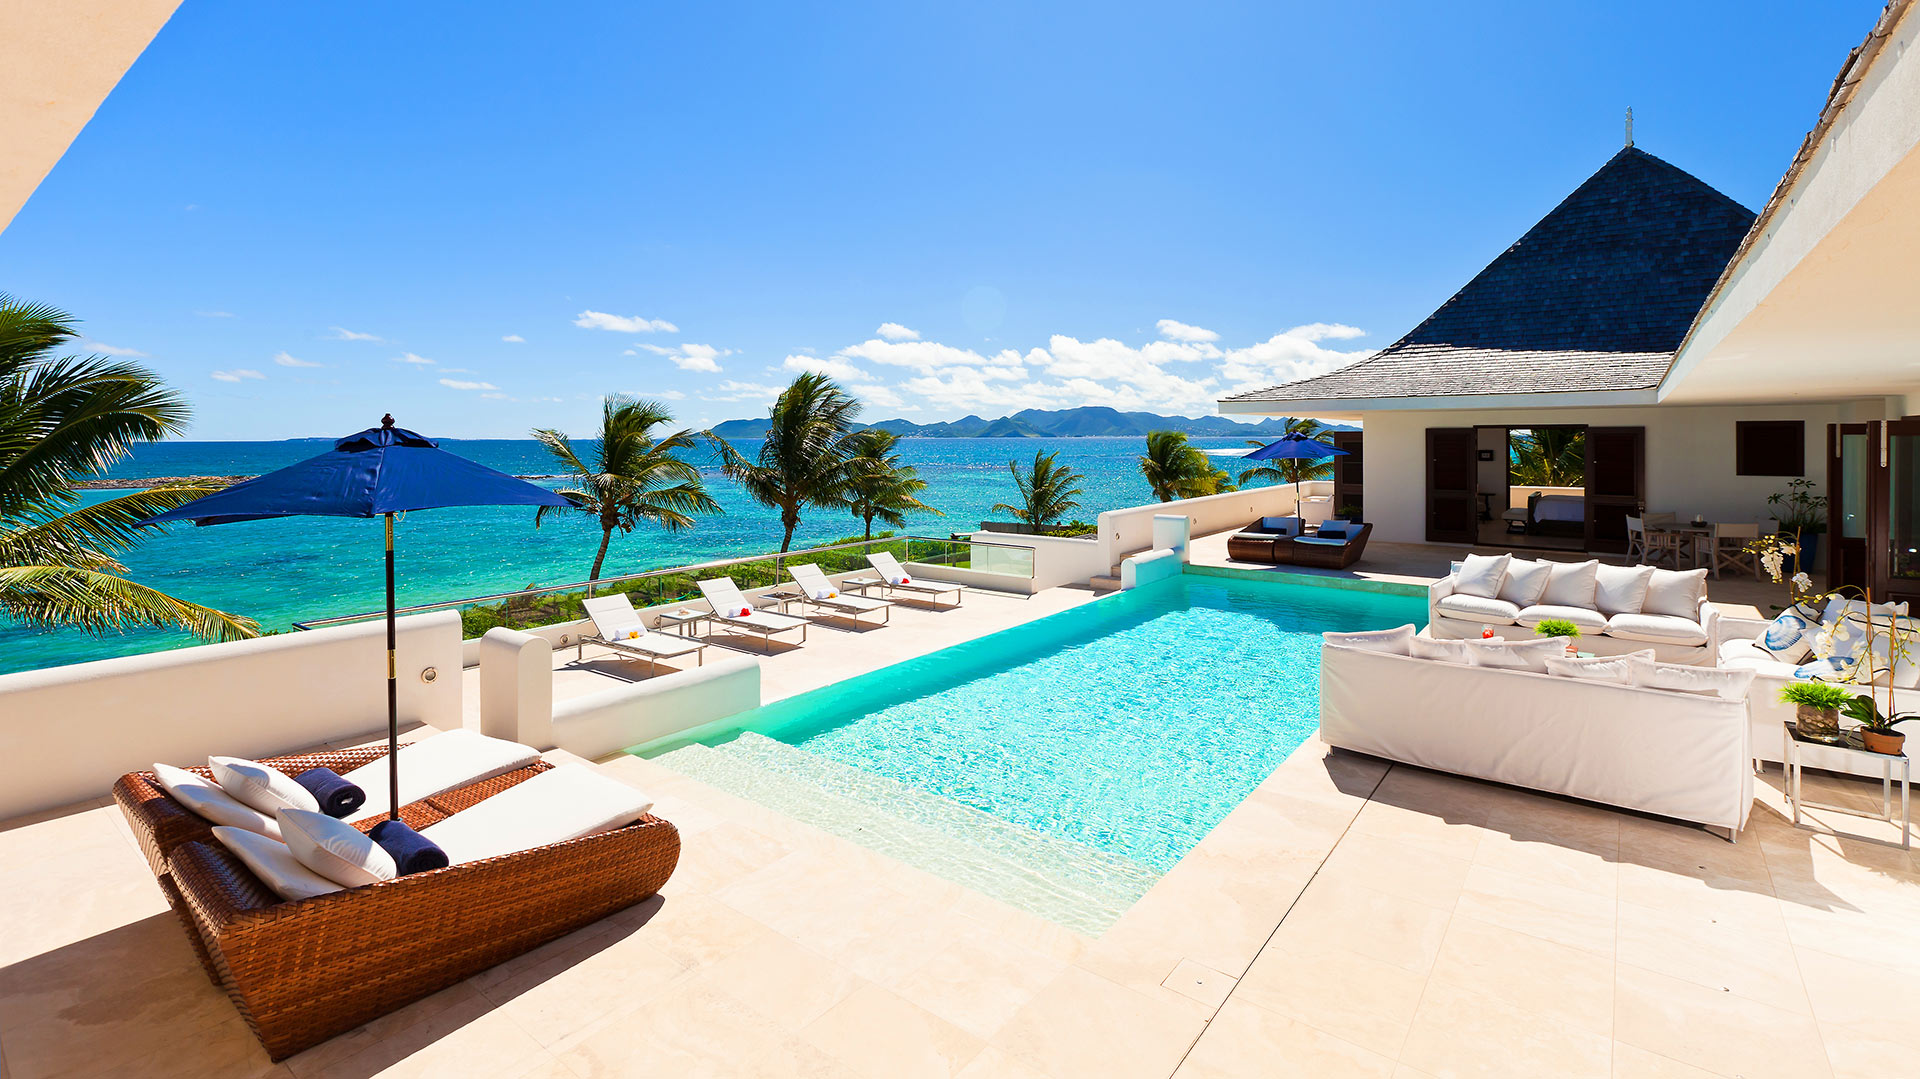 Le Bleu Villa has fantastic views from the pool deck.